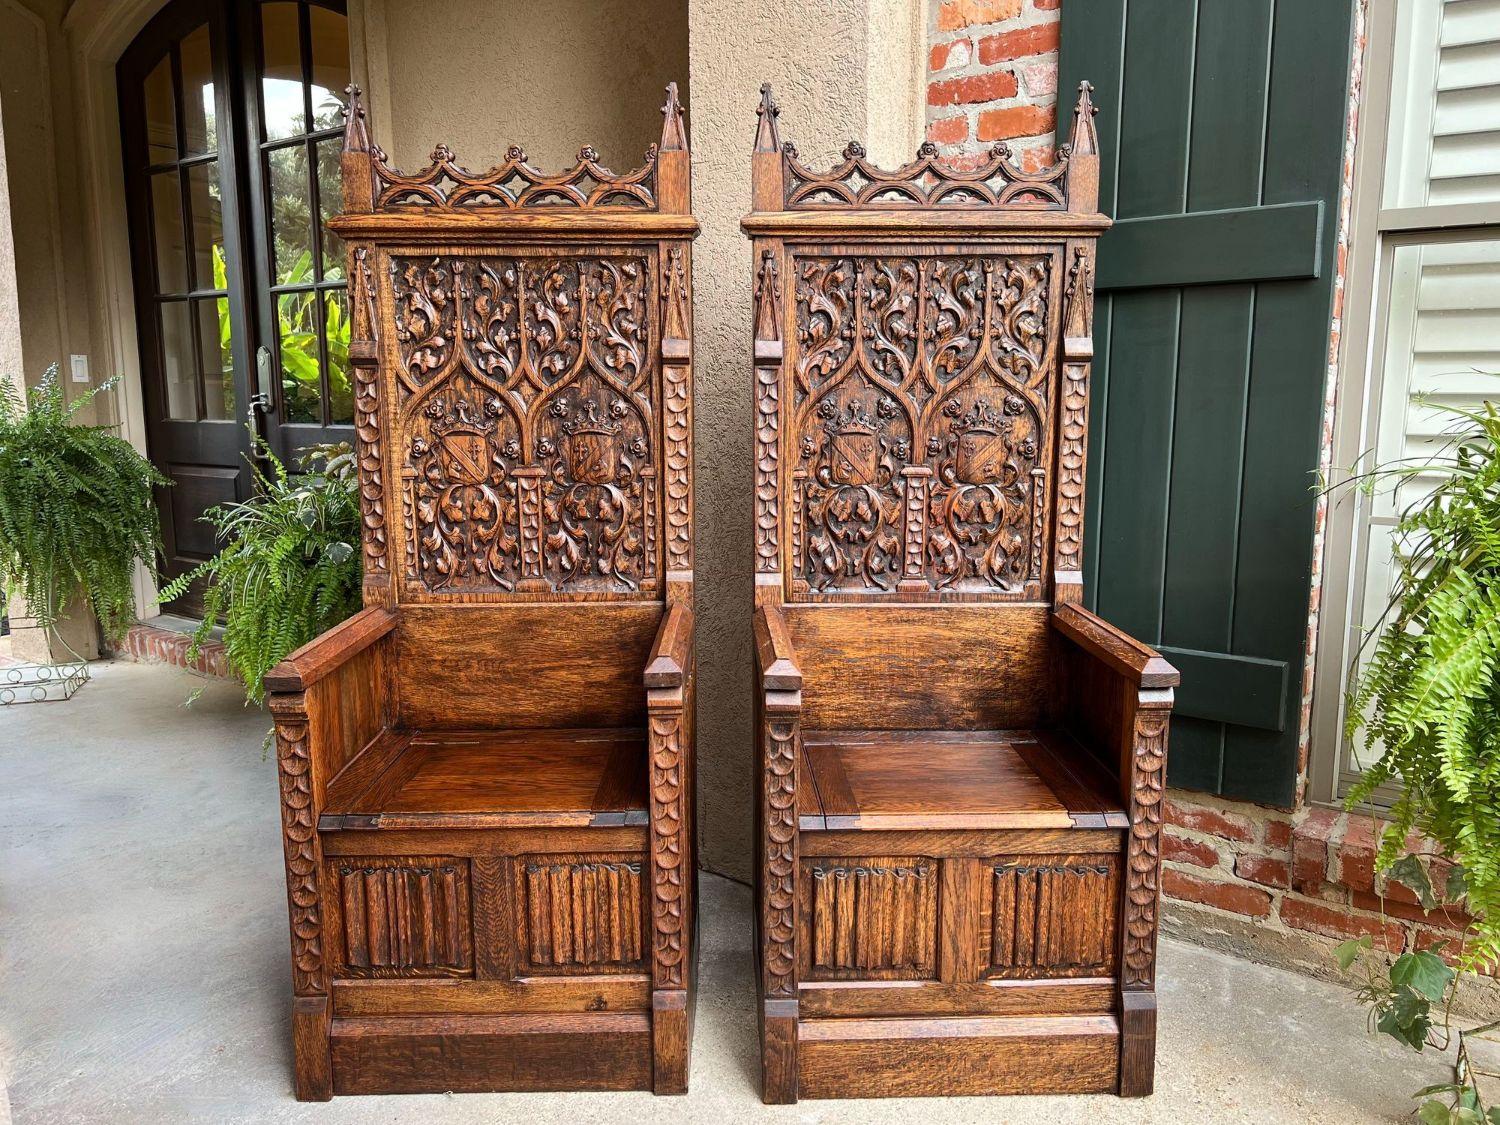 PAIR SET Antique French Hall Bench Gothic Revival Throne Altar Chairs Carved Oak.

Directement de France, une paire de majestueux bancs/chaises à trône antiques français, assortis l'un à l'autre !
Sculptures à la main très élaborées, avec des